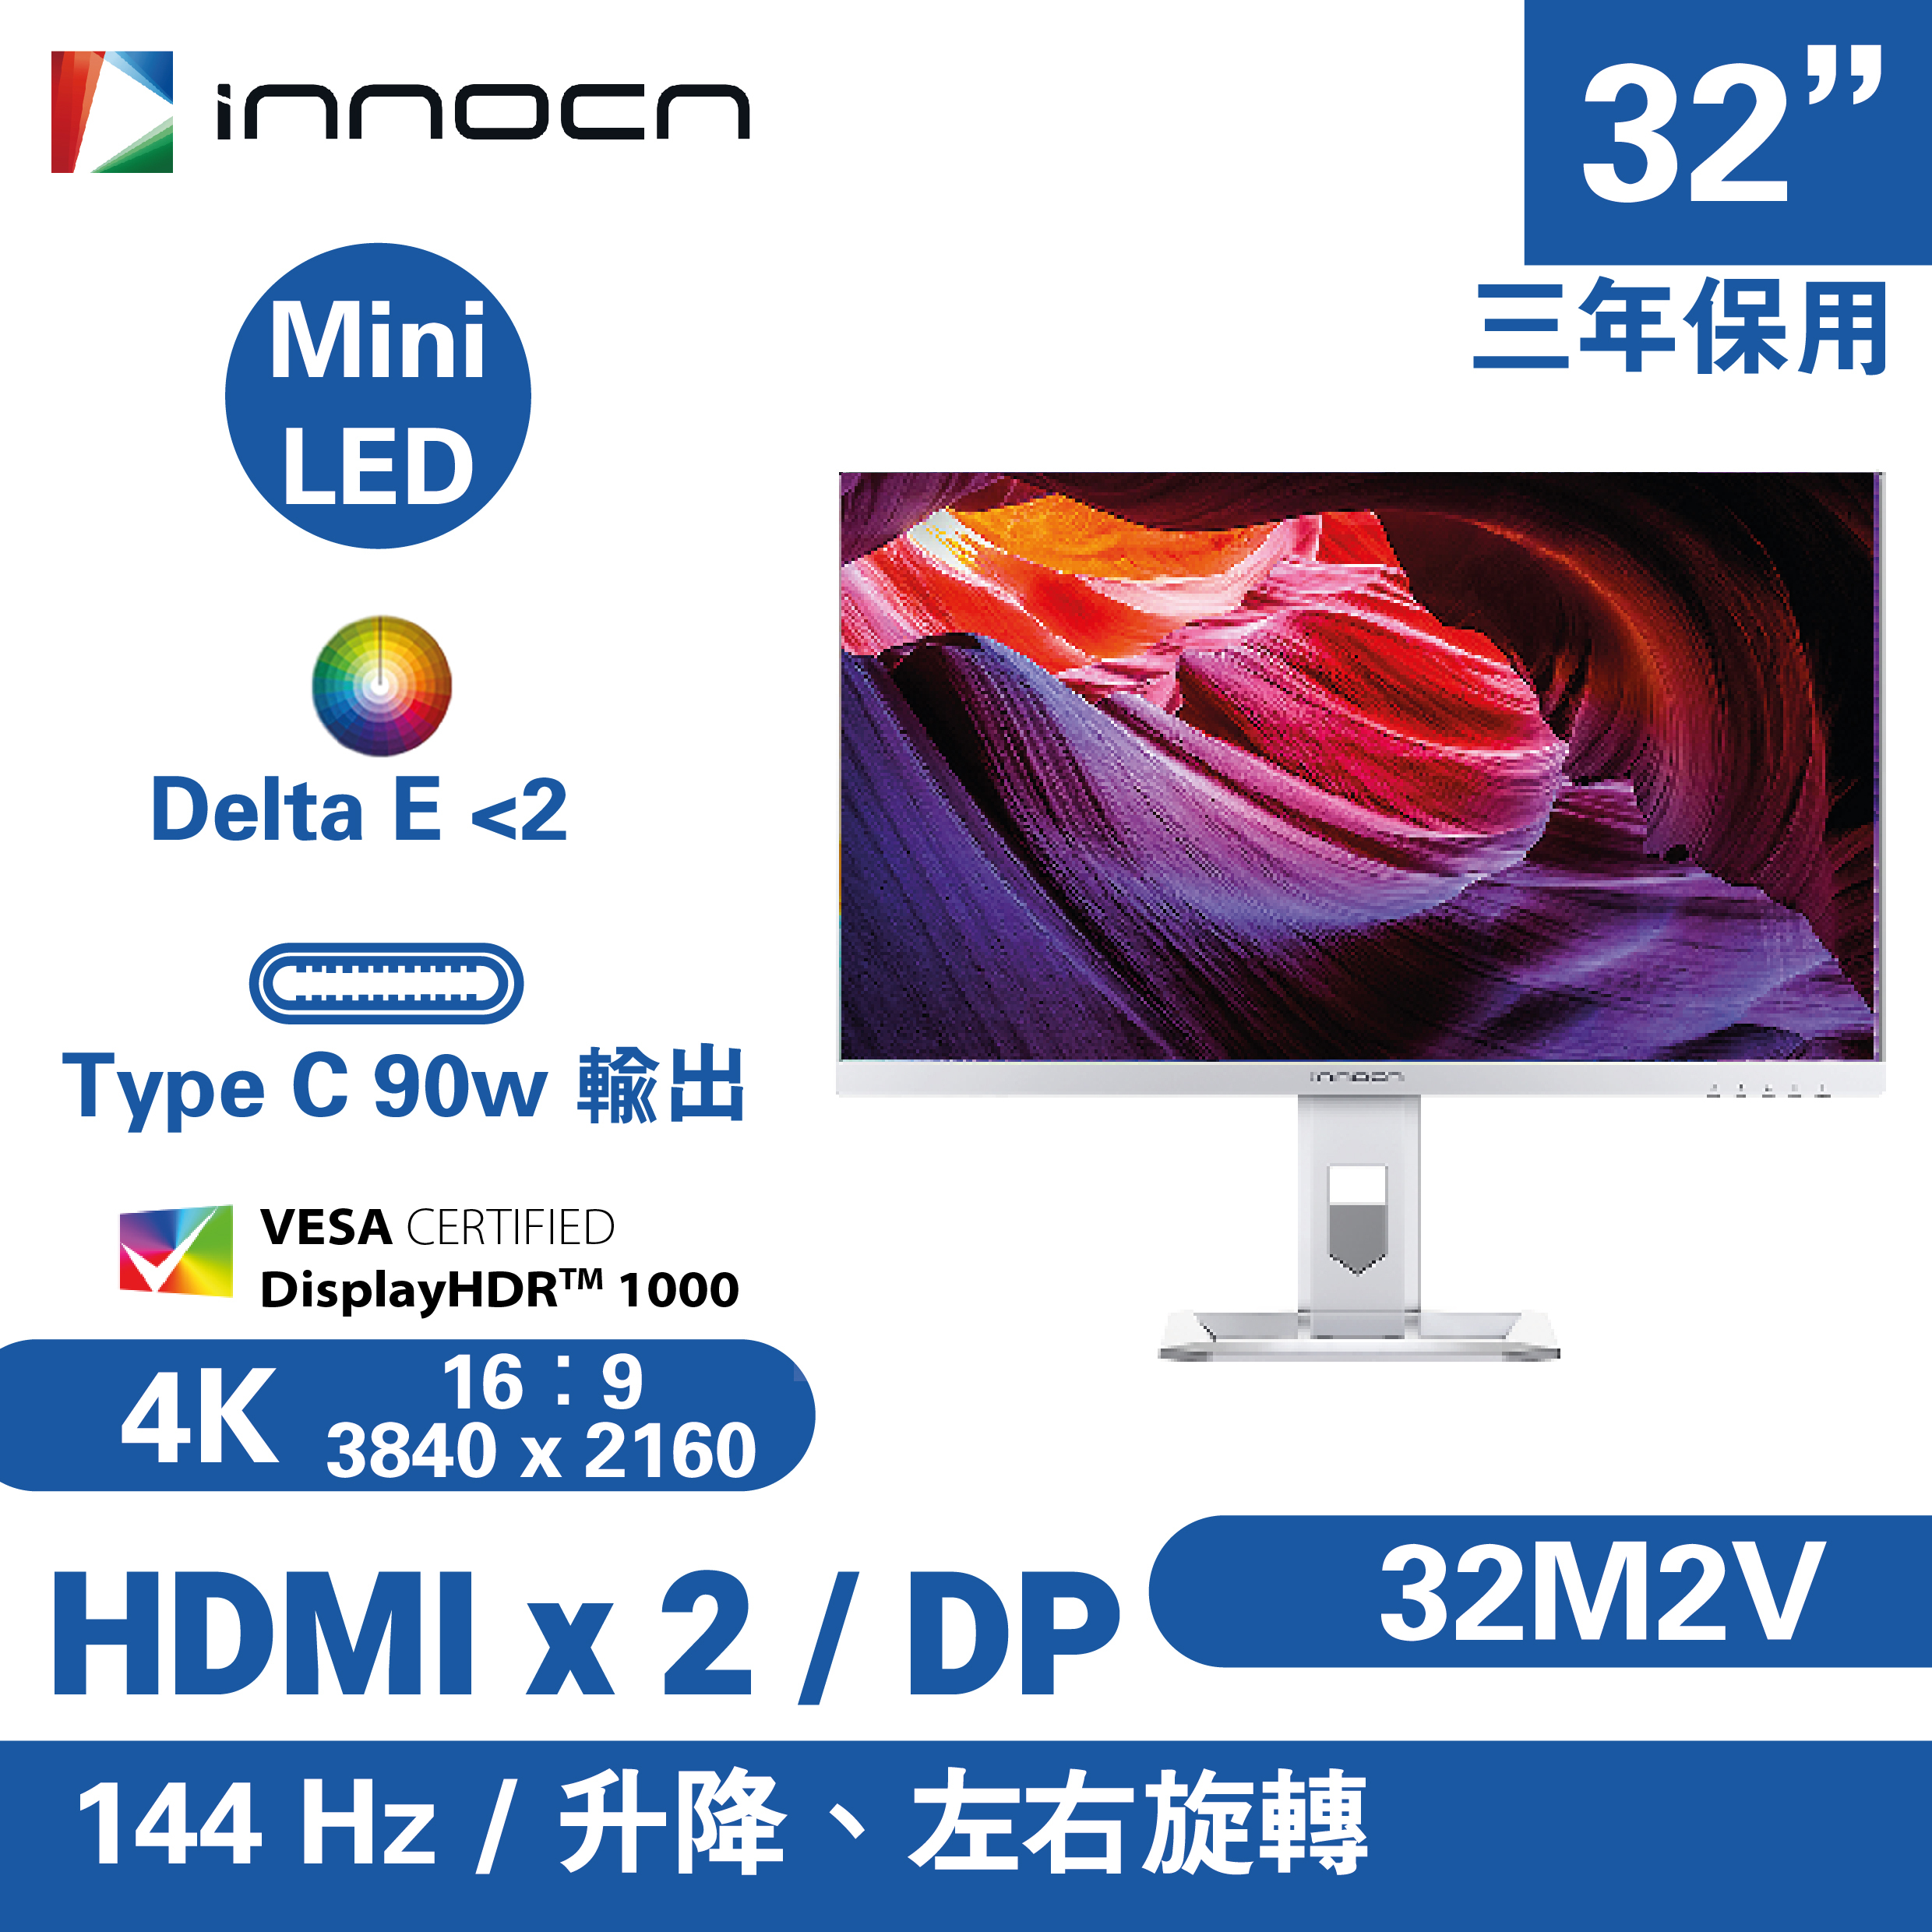 INNOCN 顯示器M2V 32